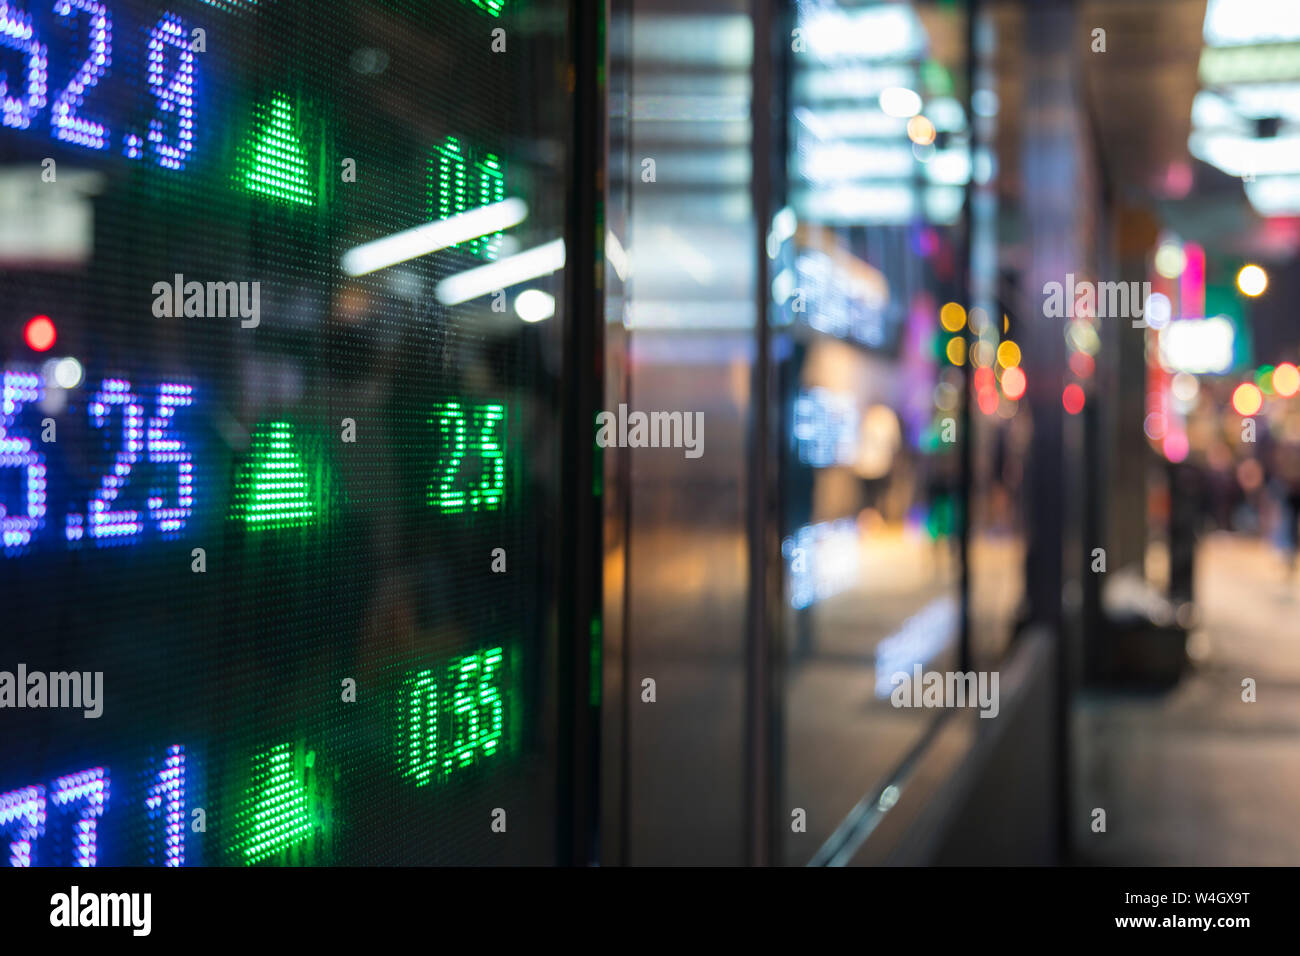 Stock Market Display, Hong Kong, China Stock Photo